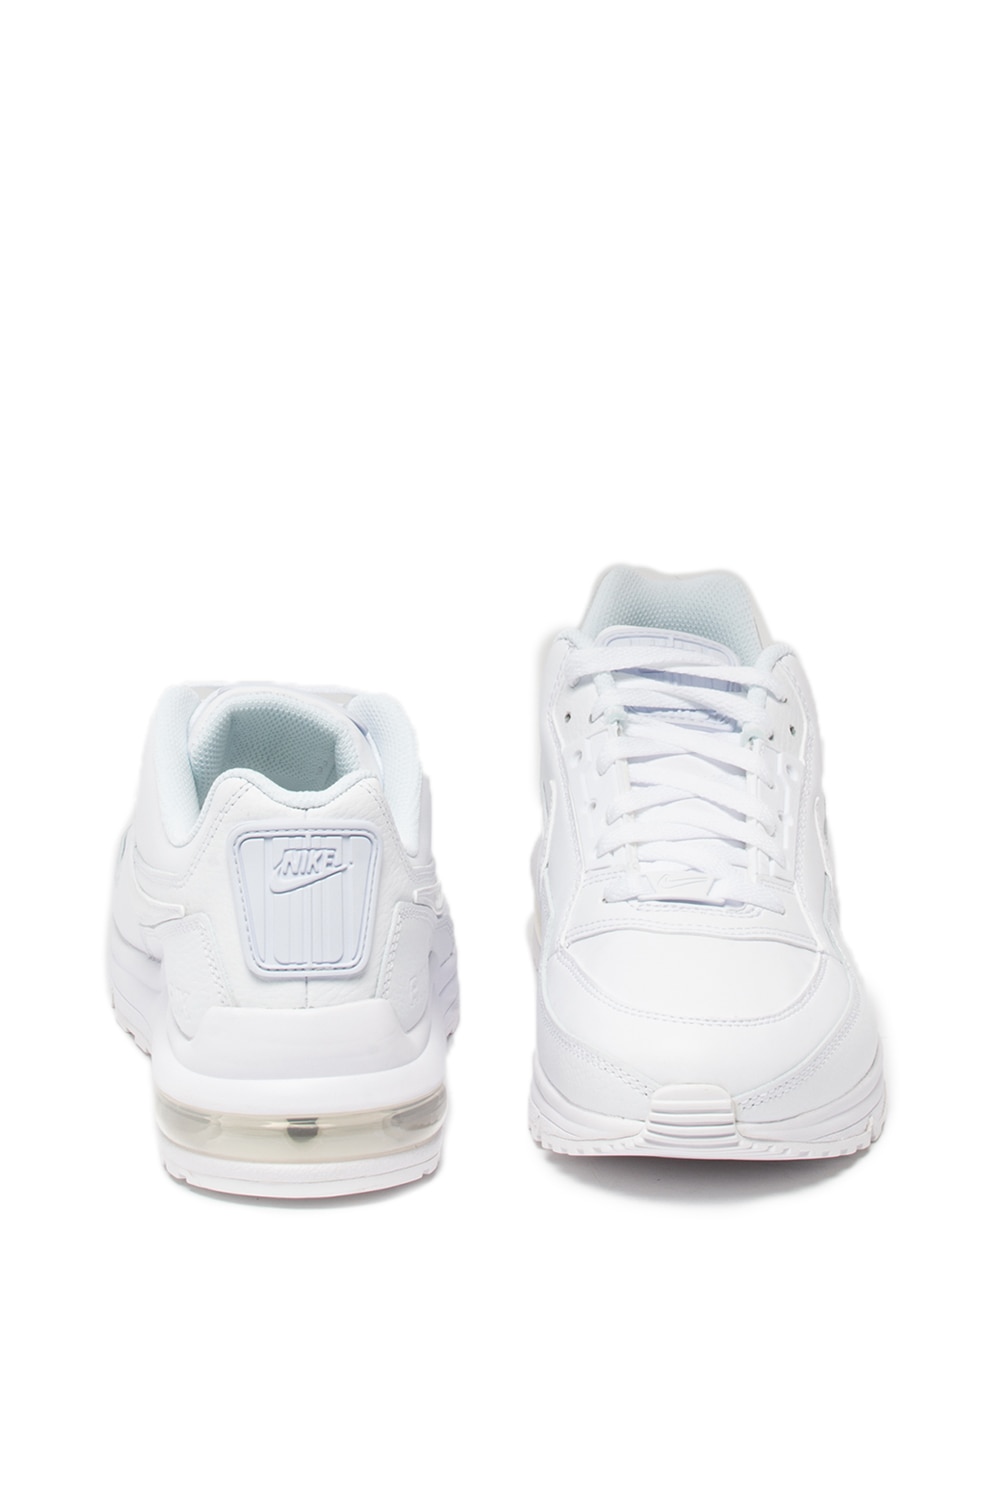 Nike, Air Max Ltd 3 bőr sneaker, Fehér 